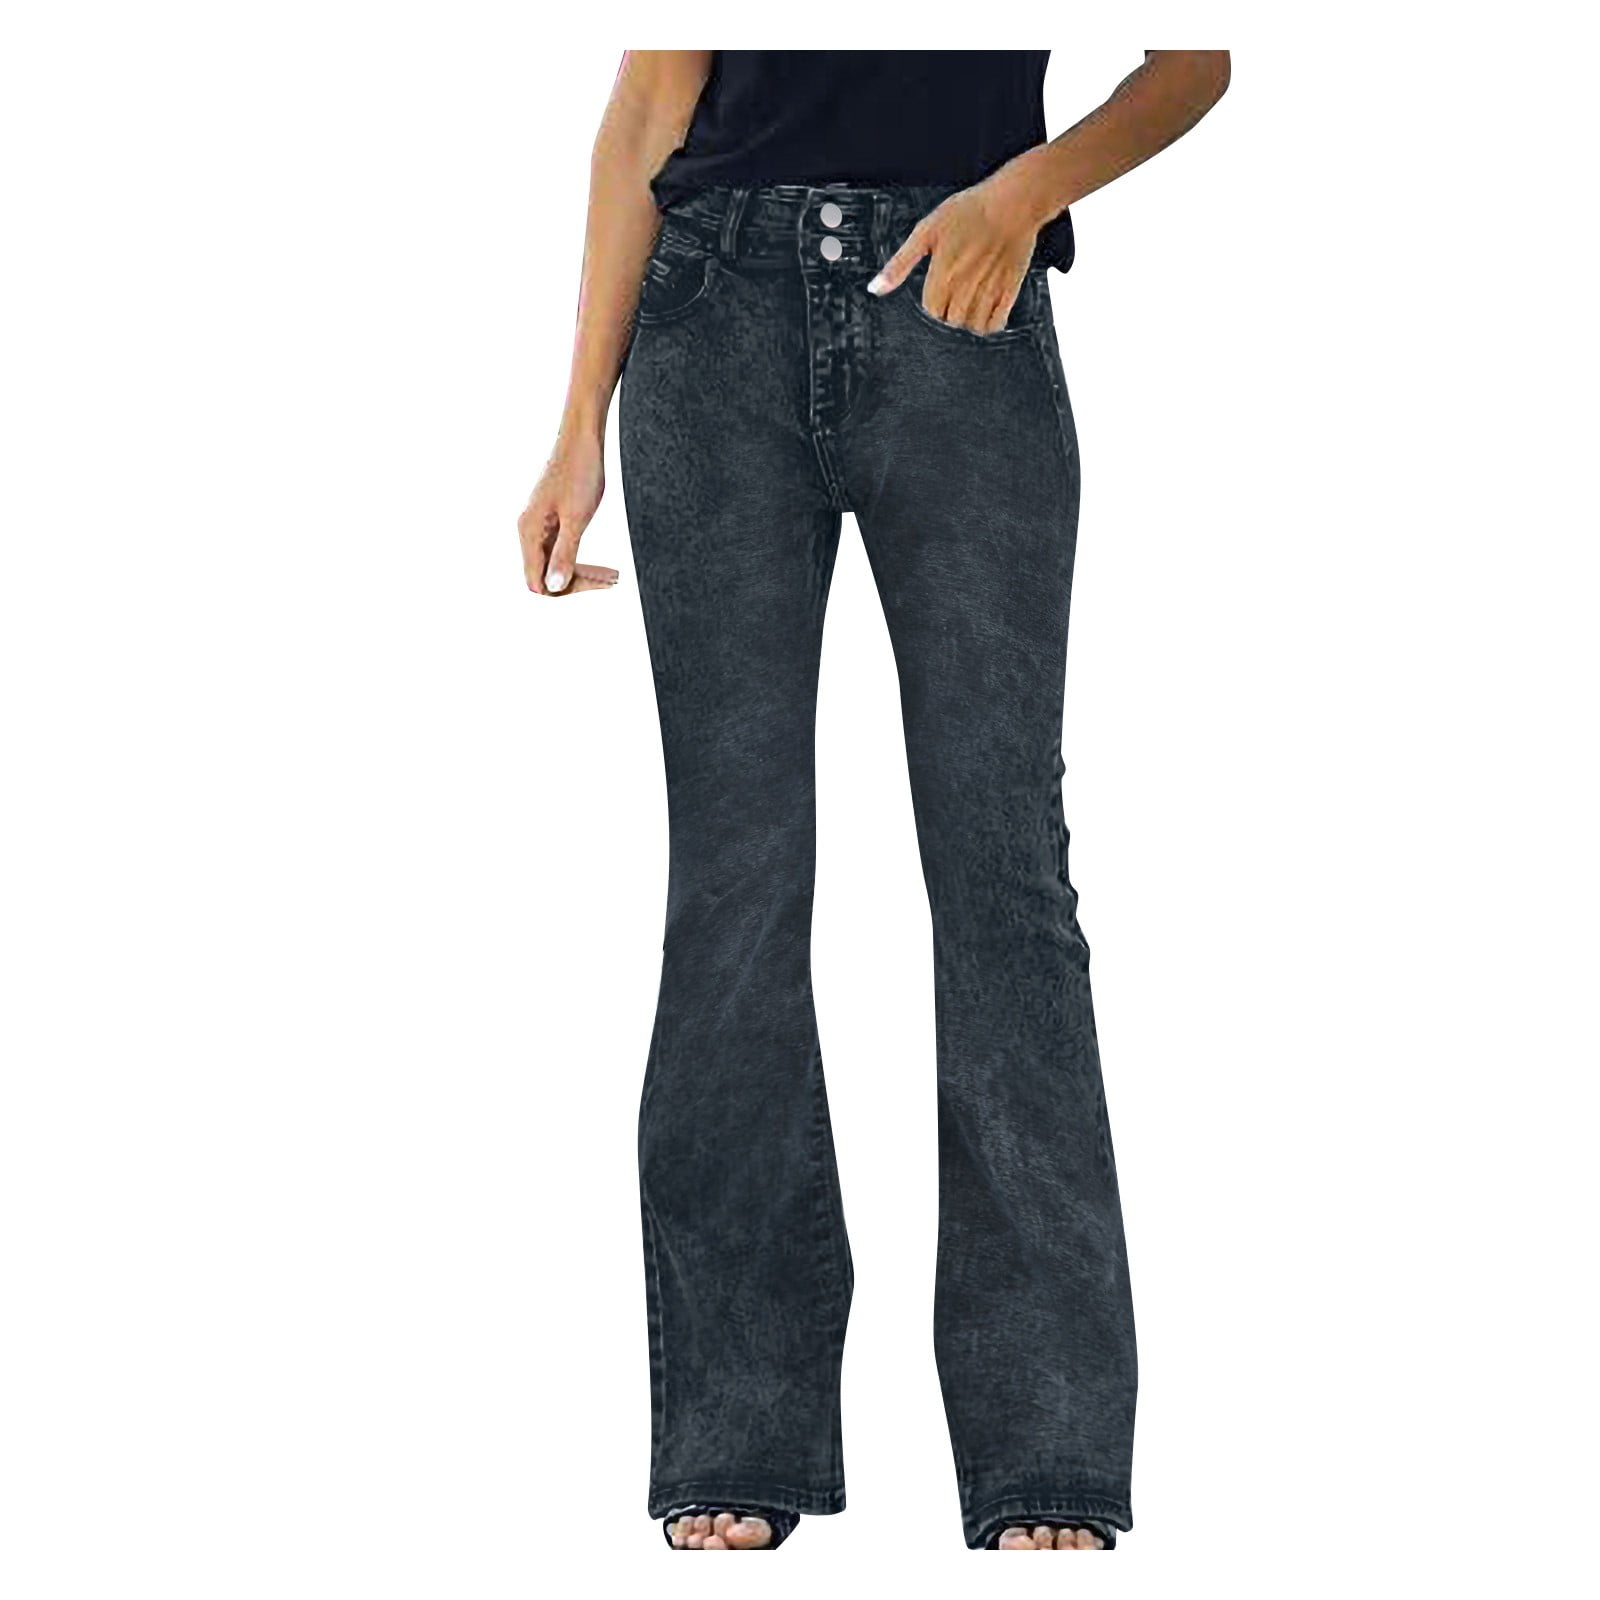 aDJFDGT High Waist Jeans for Women Women High Waist Distressed Pocket ...